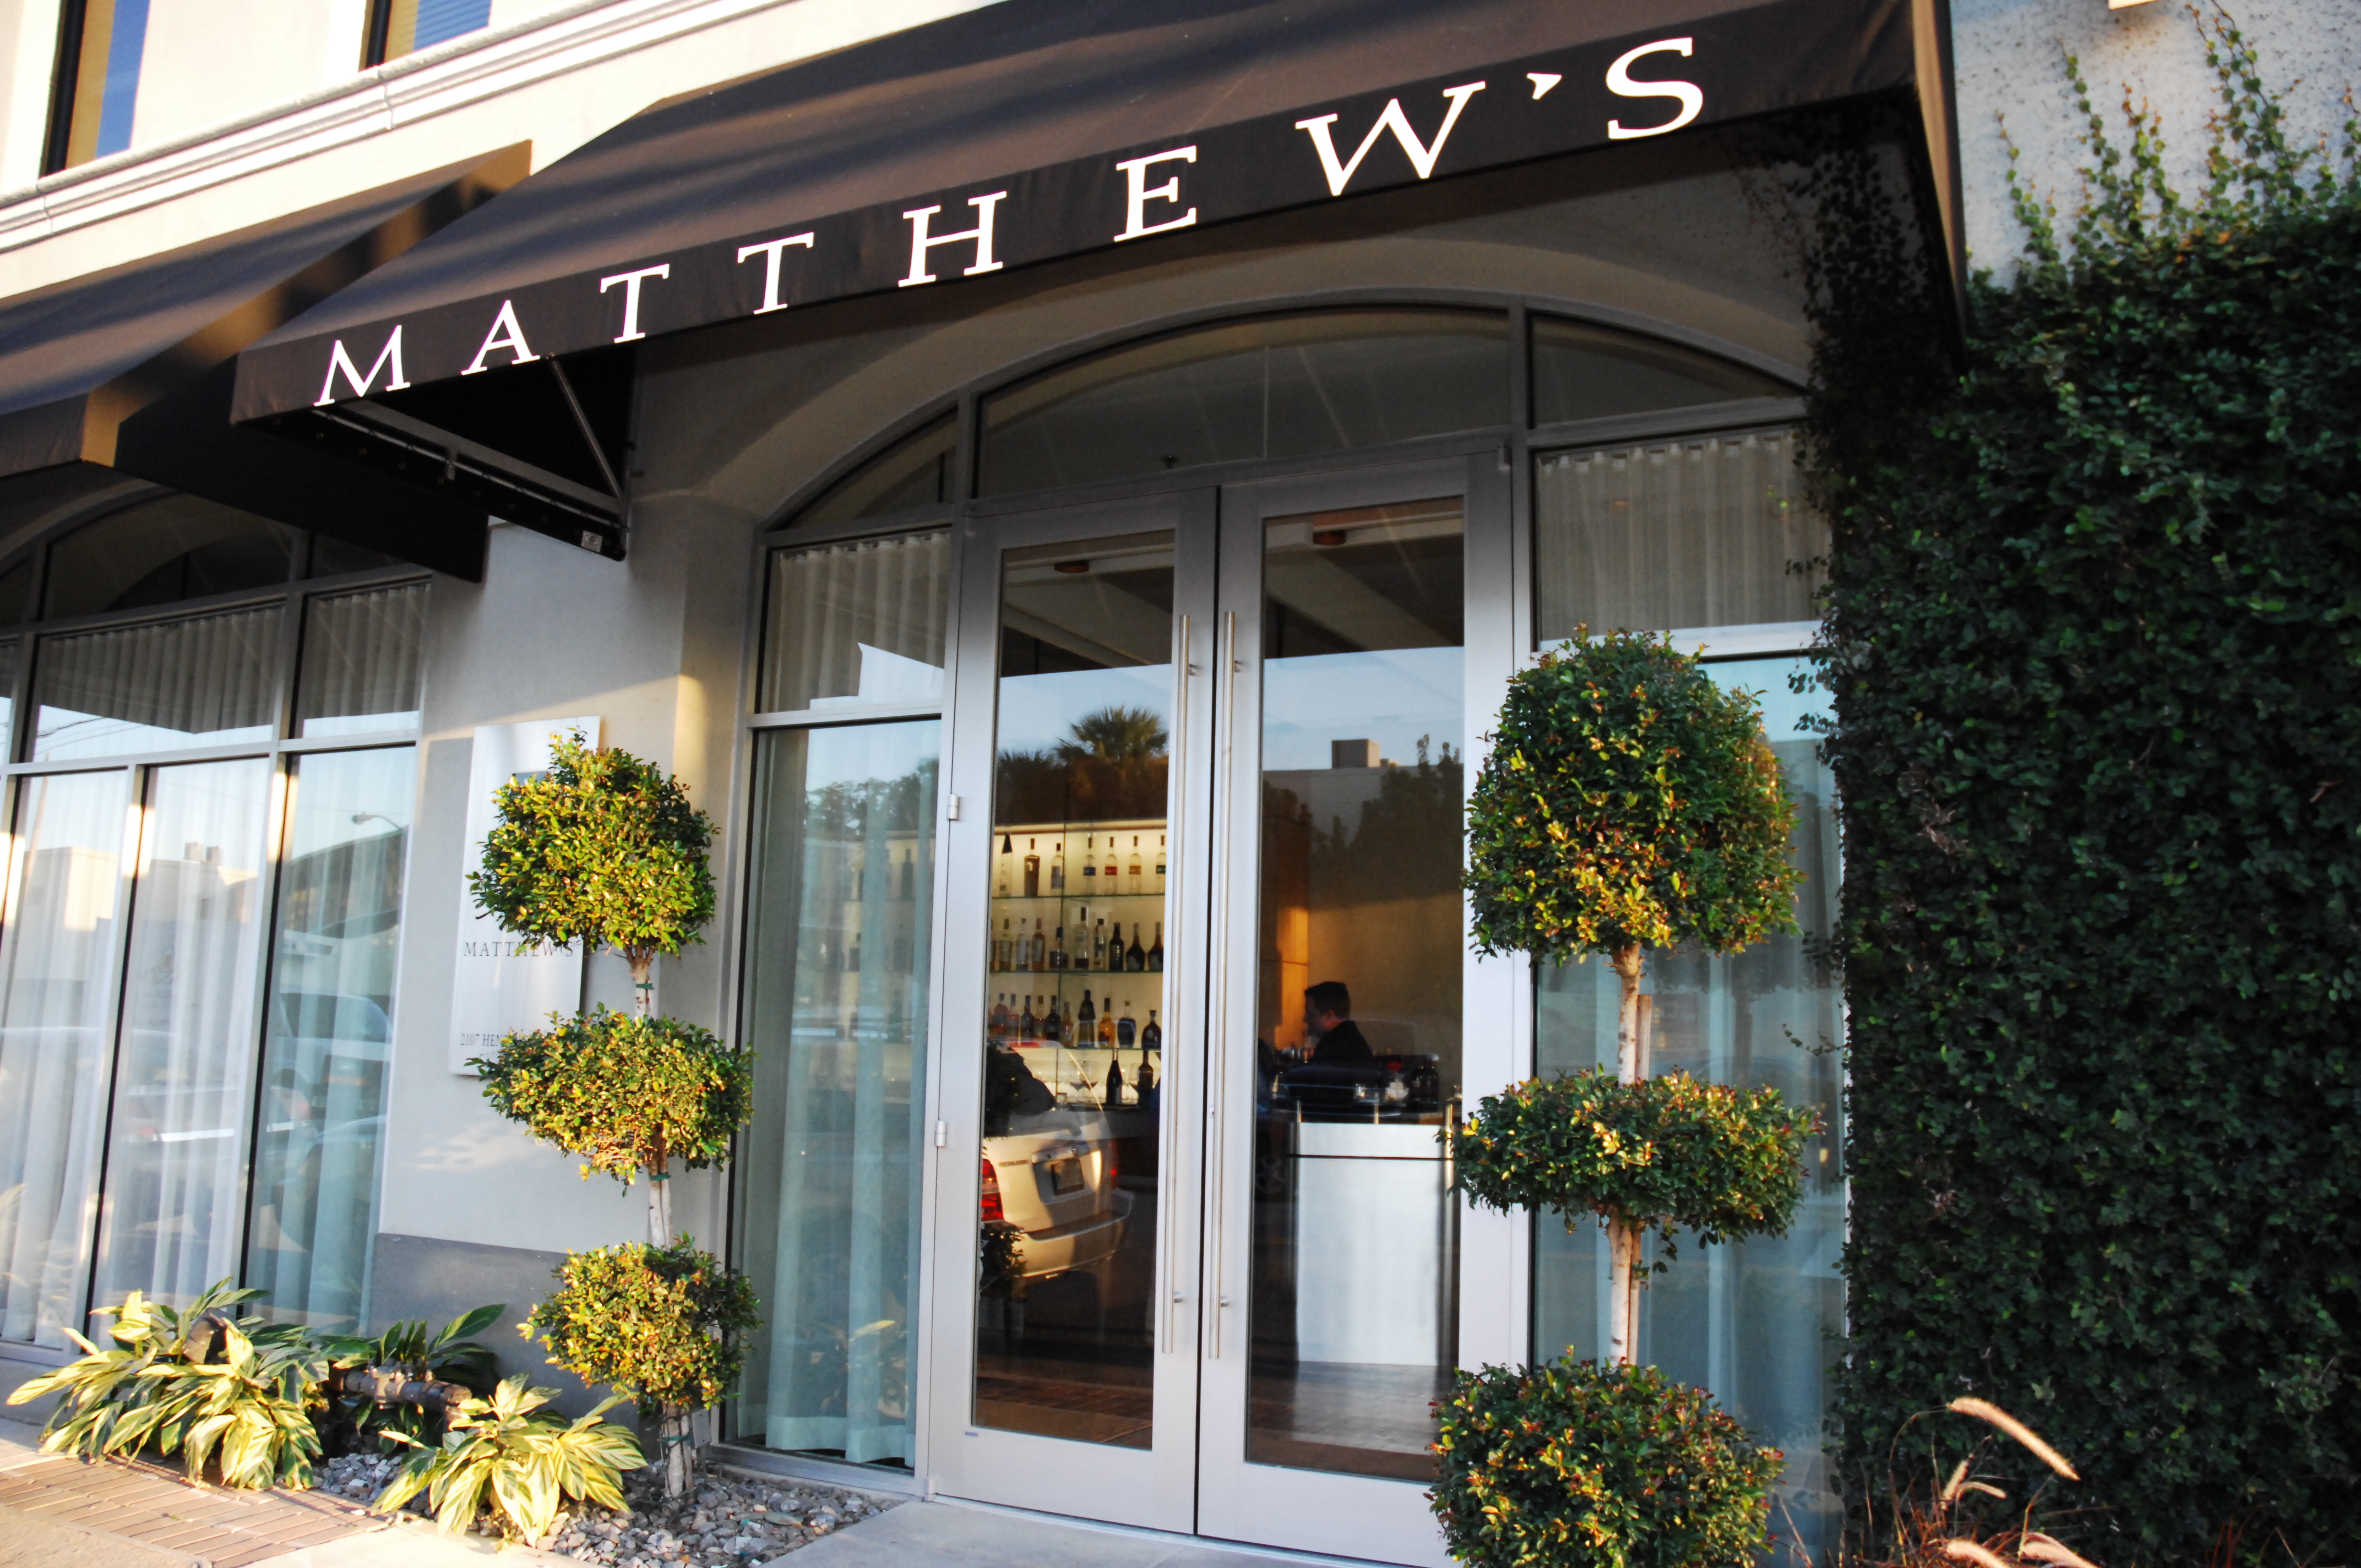 Matthew's Restaurant